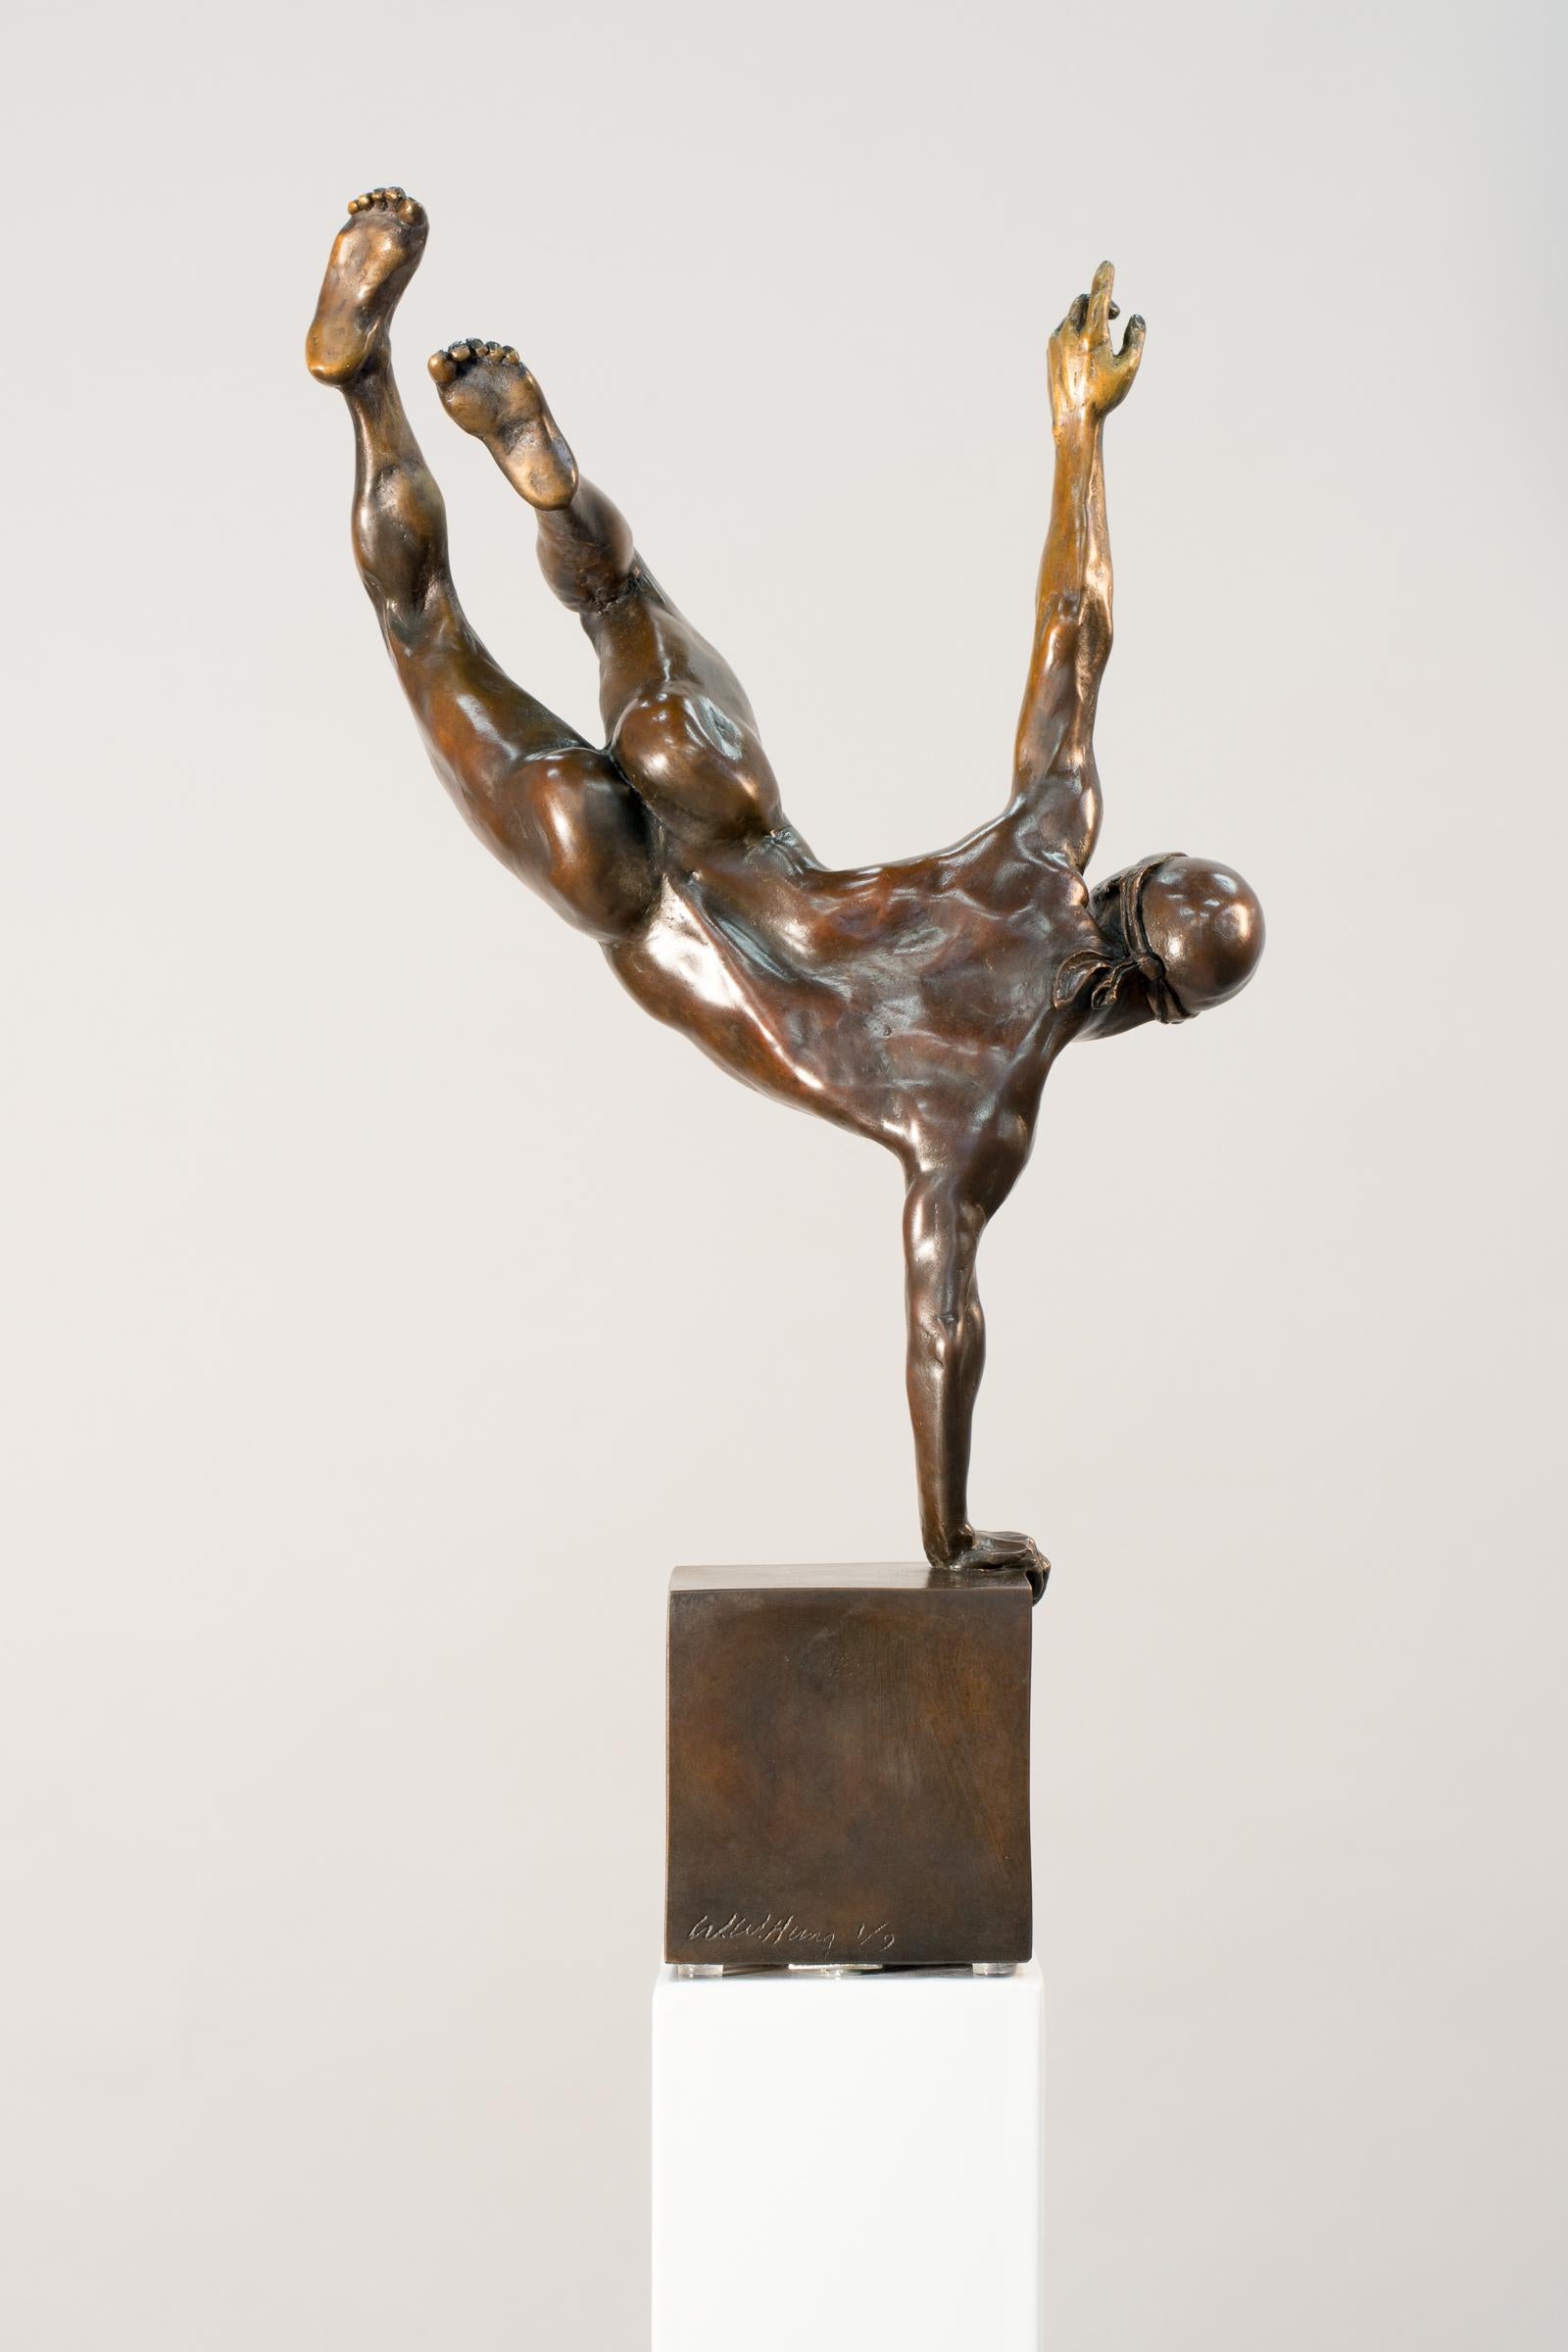 Yearning 2/9 - männlich, nackt, figurativ, statuette, Bronzeskulptur (Zeitgenössisch), Sculpture, von W.W. Hung